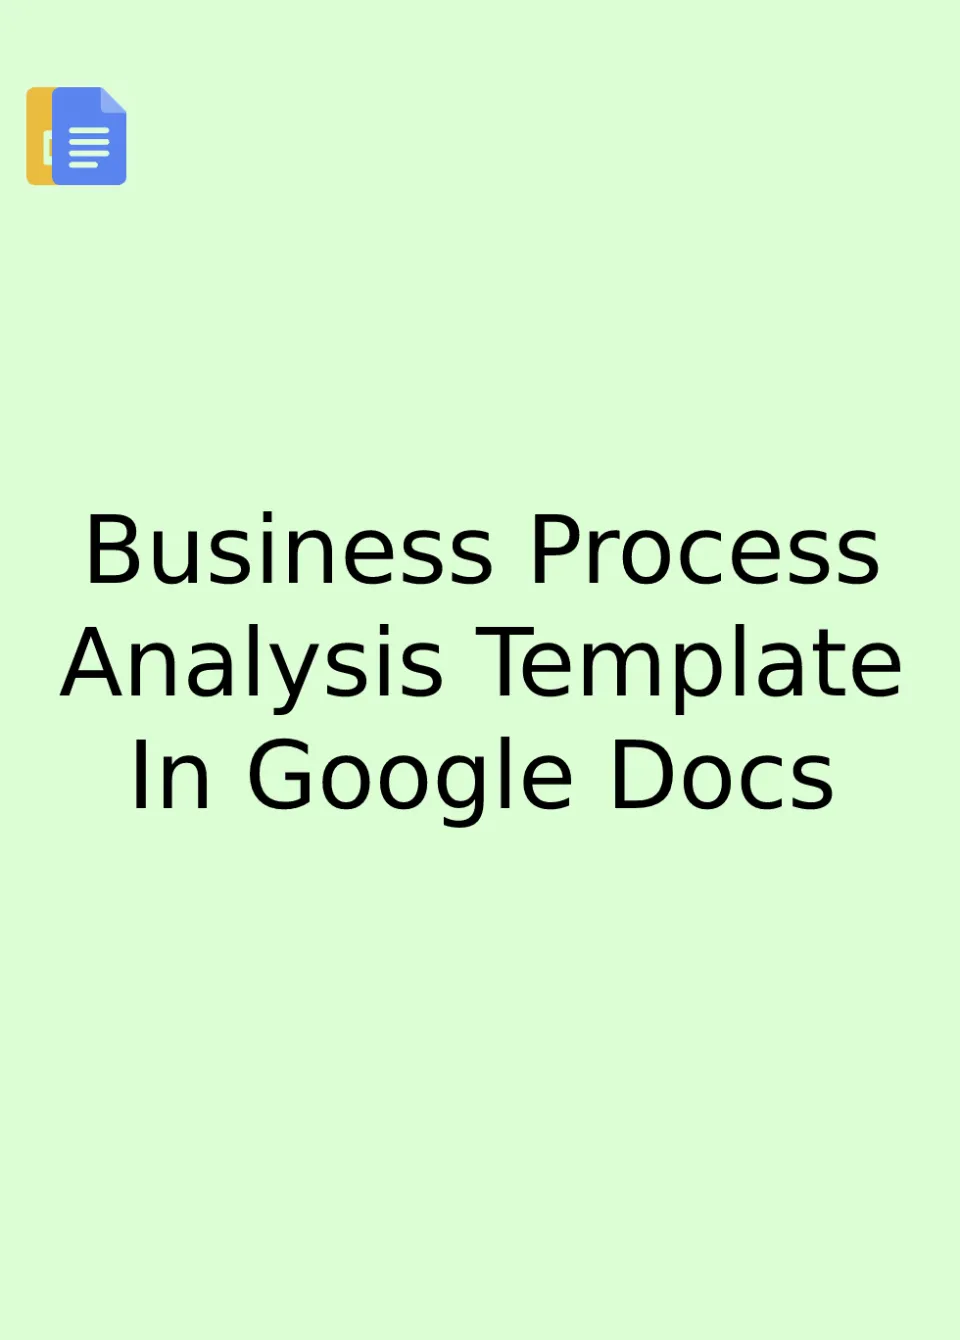 Business Process Analysis Template Google Docs